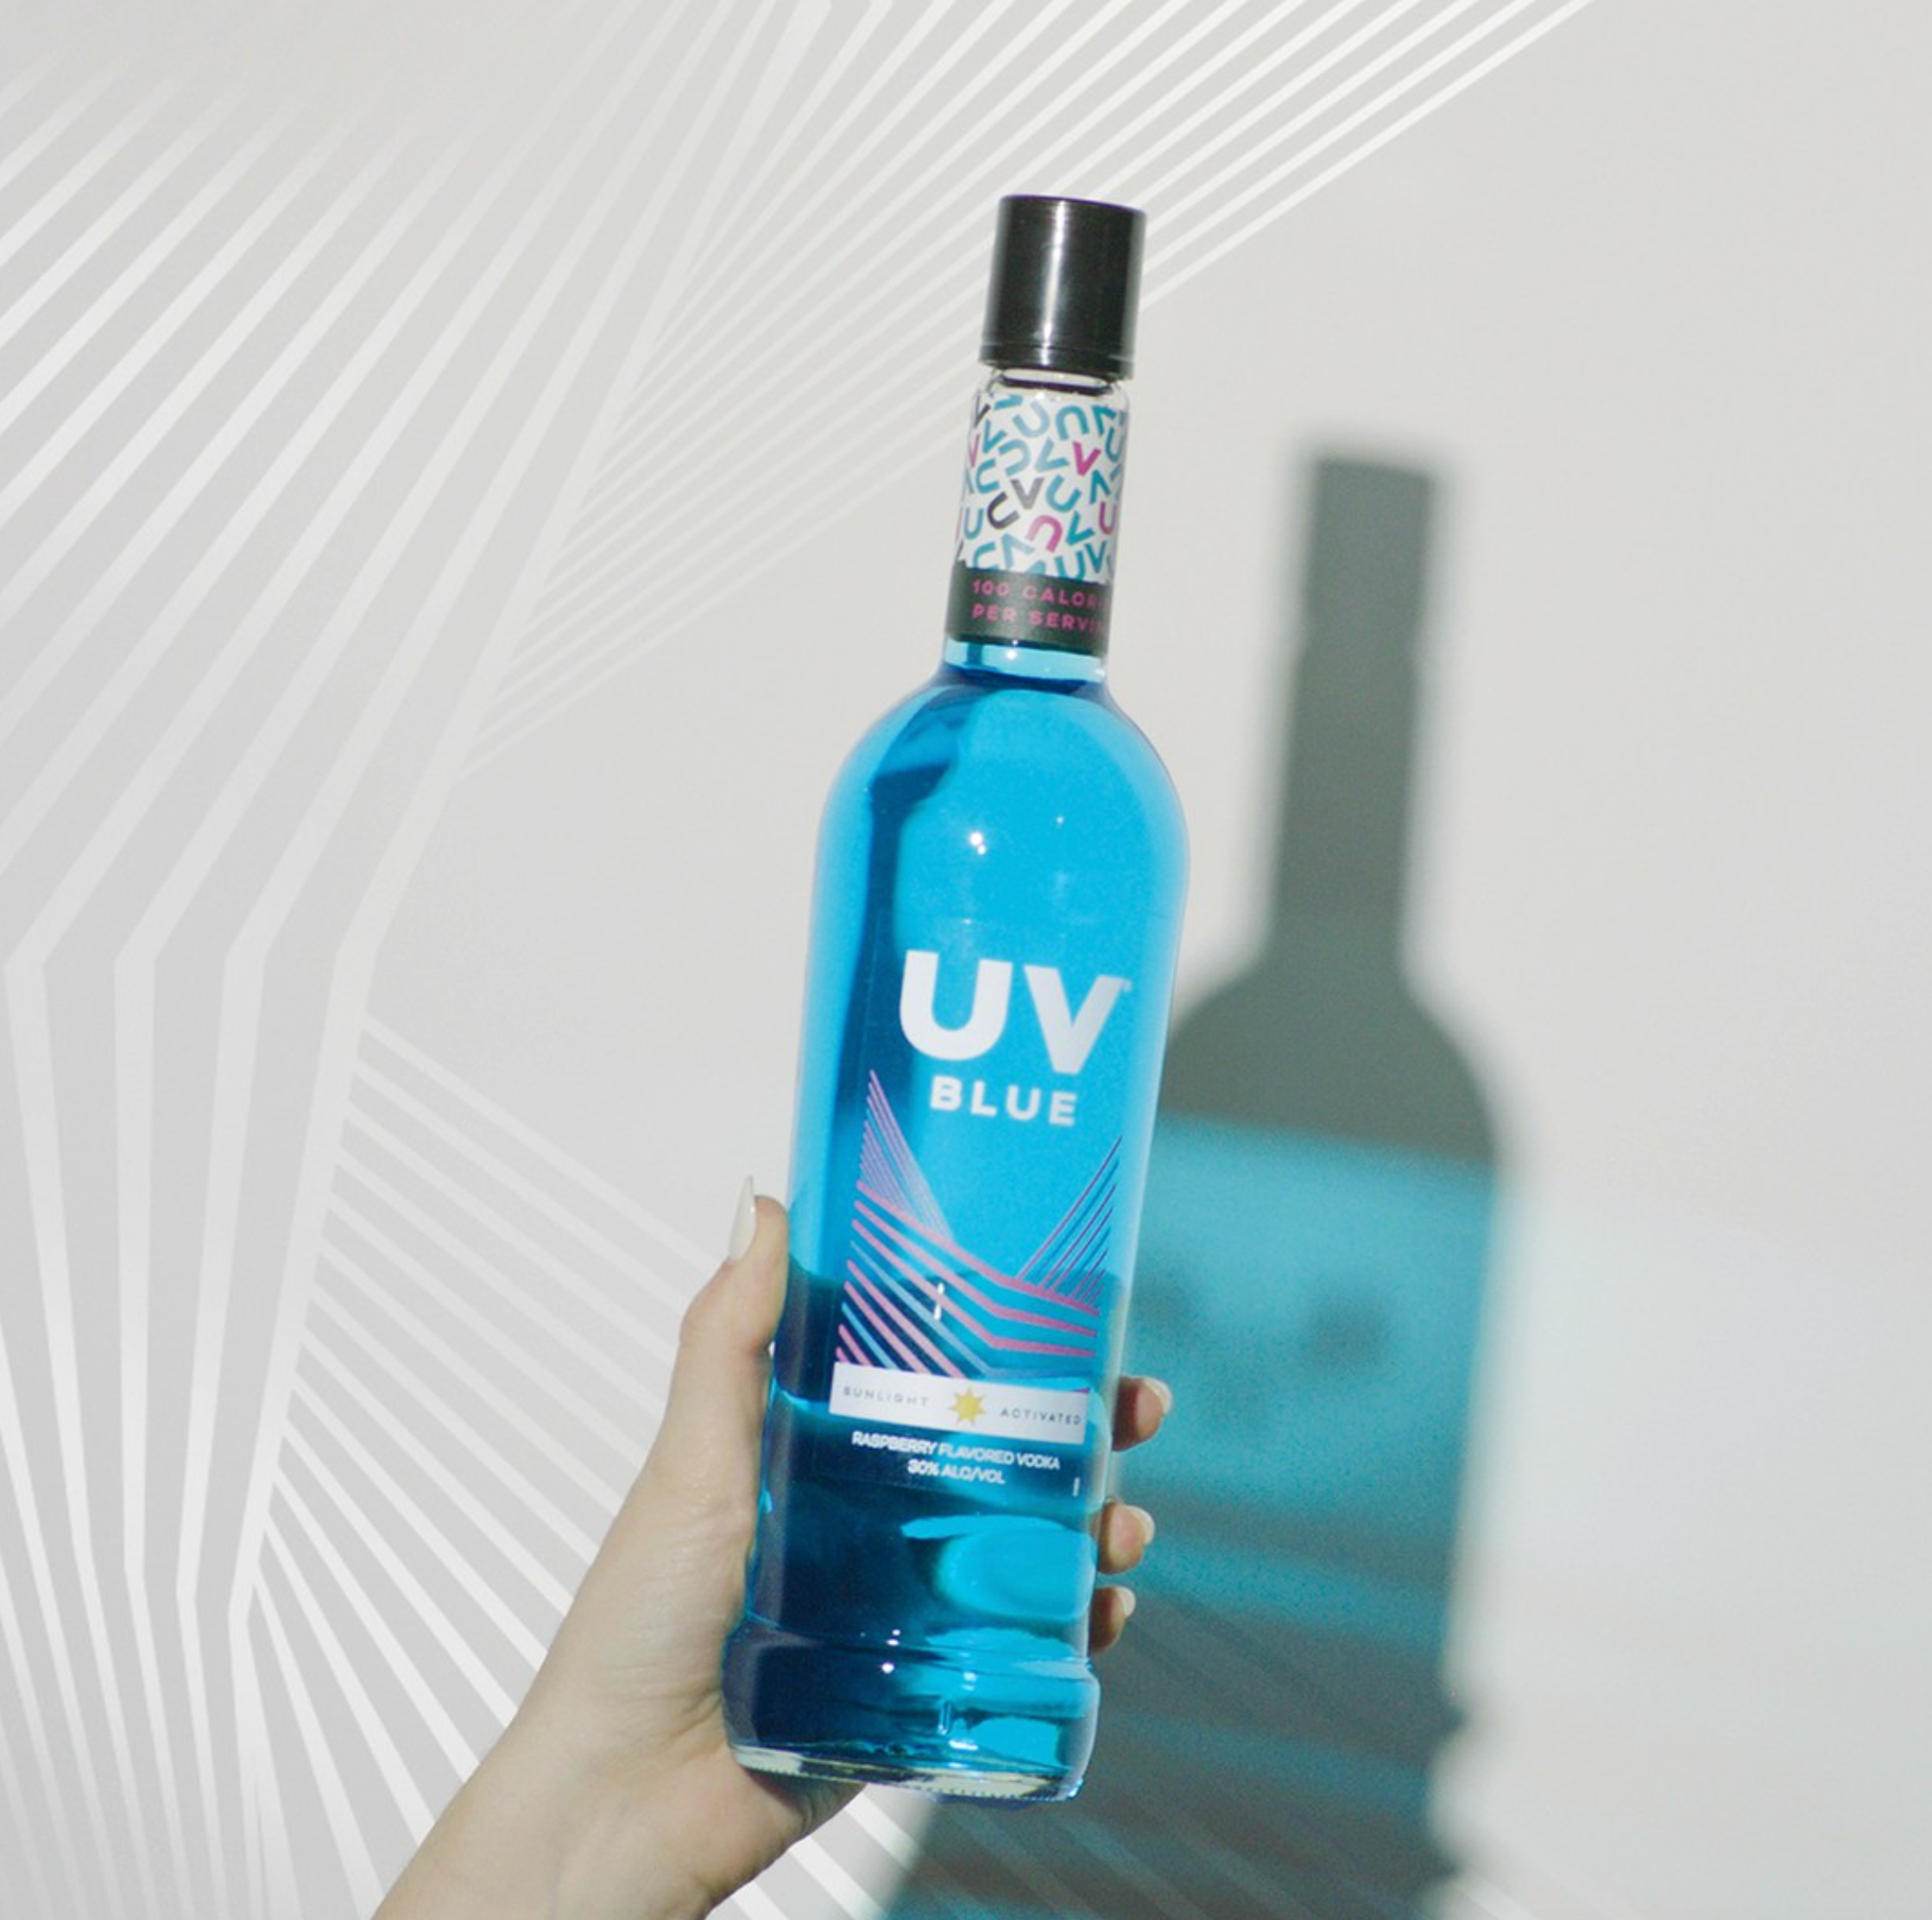 UV Blue (Raspberry Flavored Vodka)